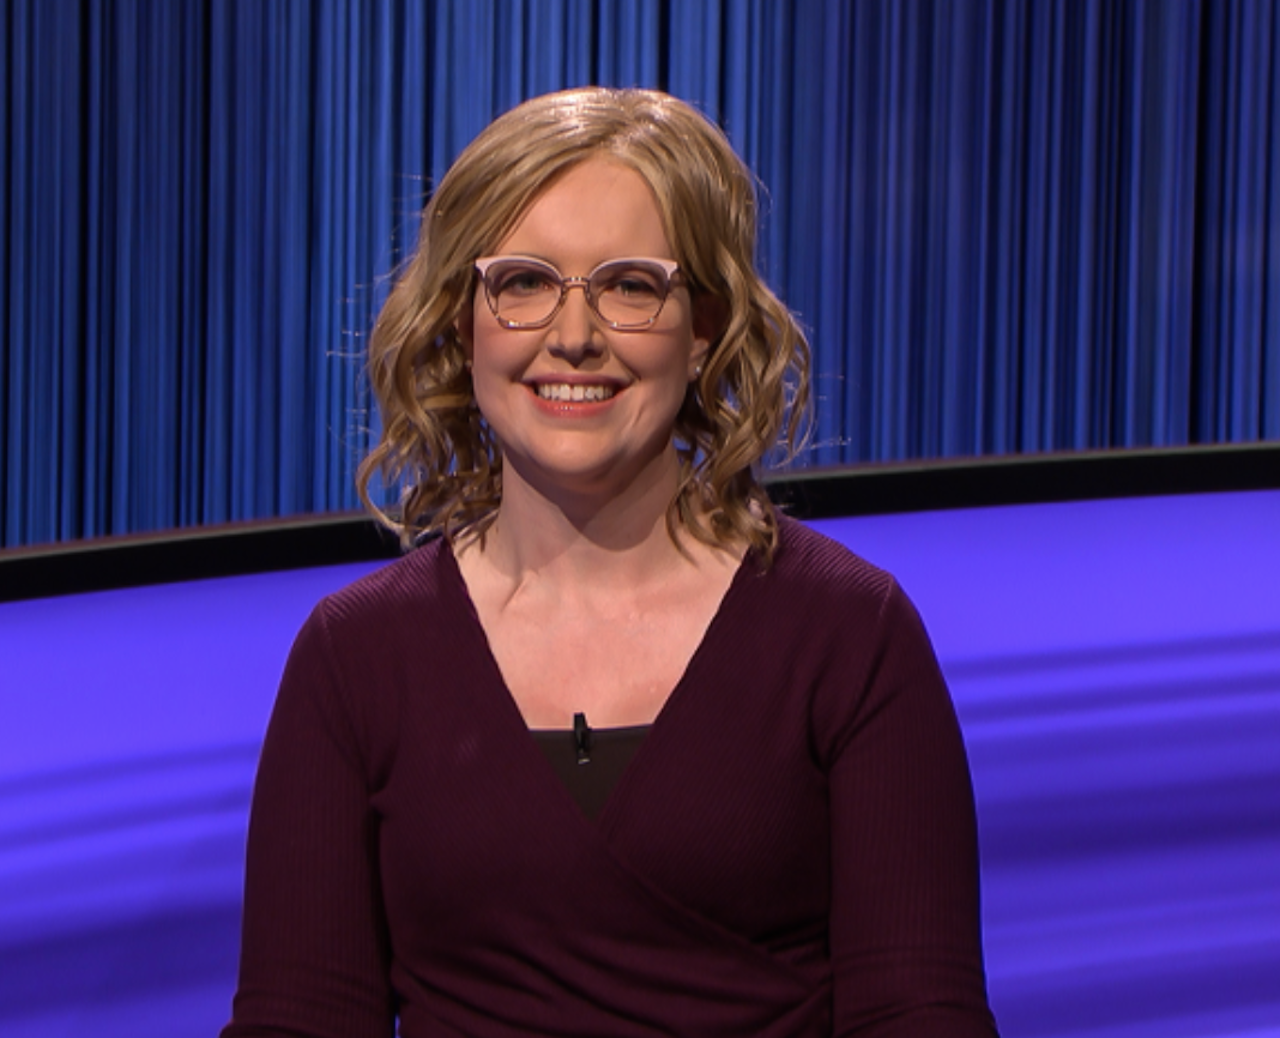 Christine Whelchel of 'Jeopardy!'